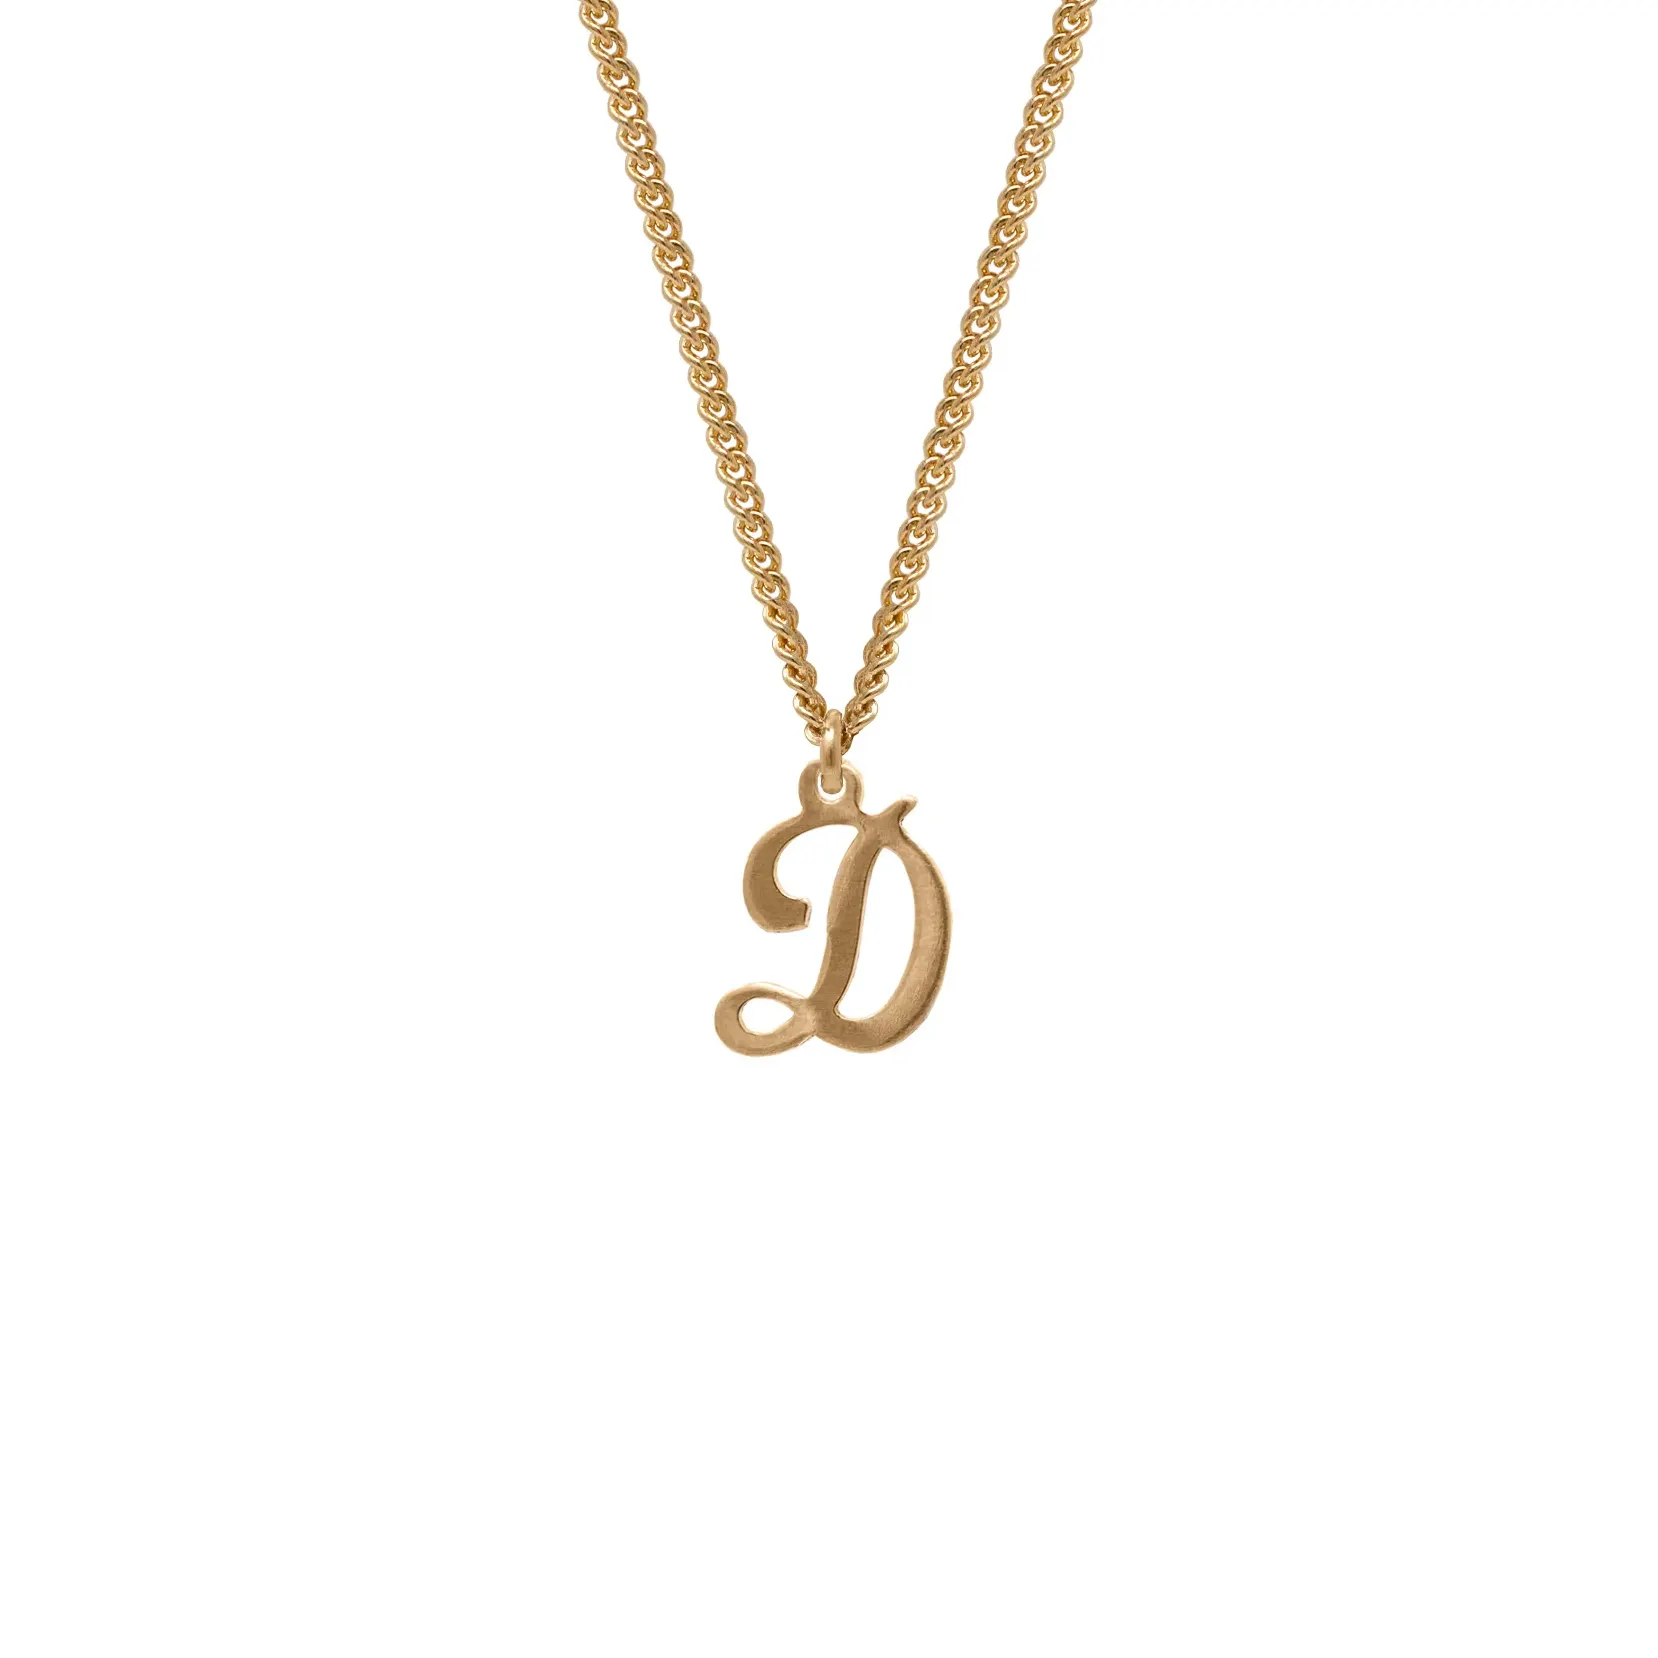 Milskye lusso minimalista personalizzato 925 argento placcato in oro 18K mini cordolo catena e una corsivo collana pendente iniziale